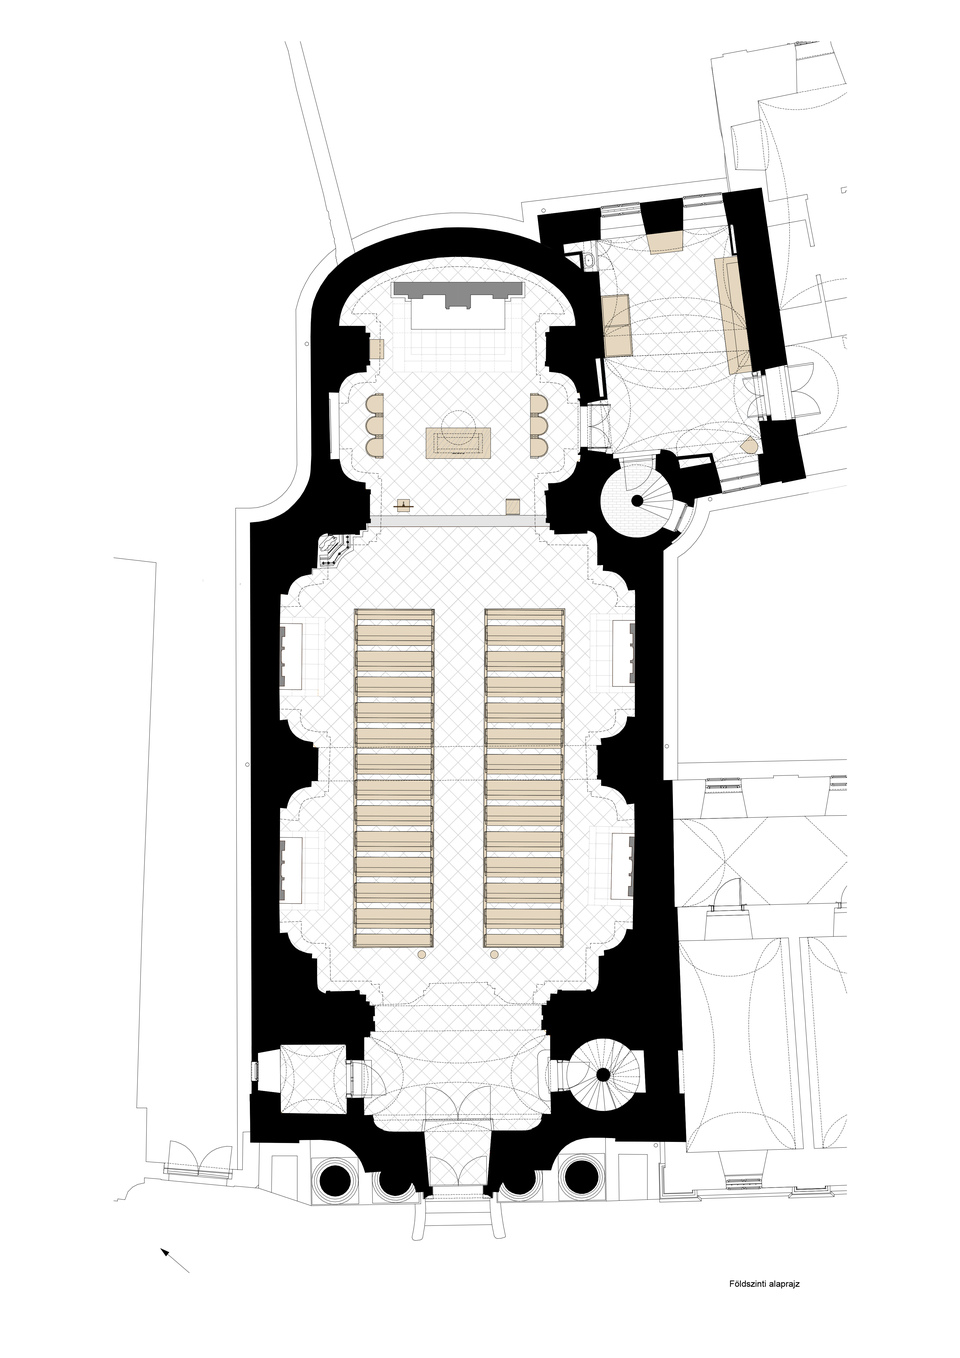 Veszprémi Építész Műhely: Veszprém, Piarista templom felújítása, földszinti alaprajz.
